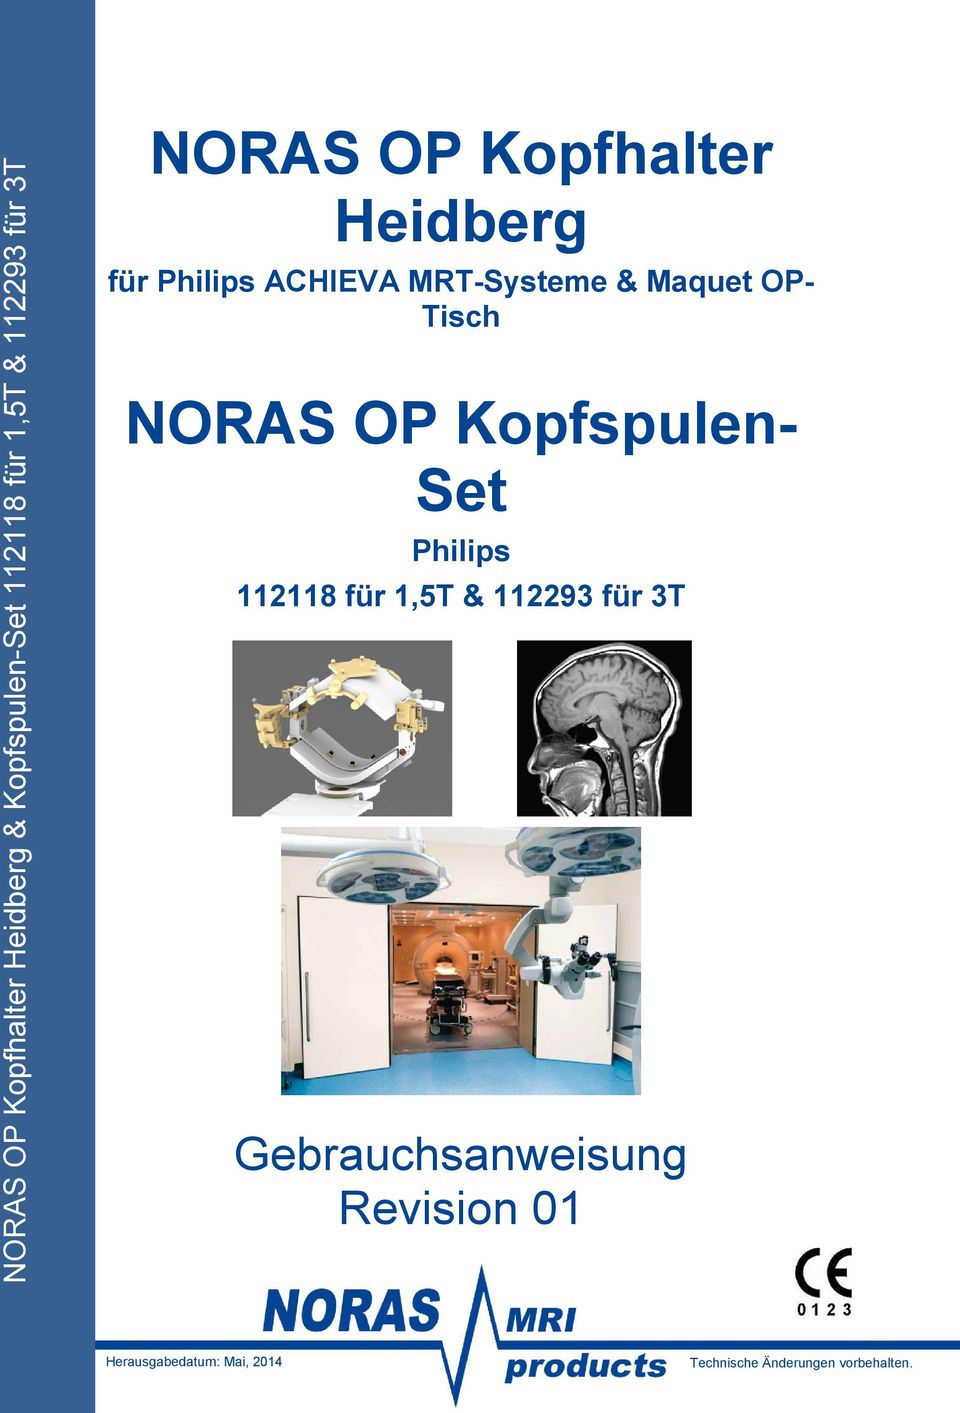 Tisch NORAS OP Kopfspulen- Set Philips 112118 für 1,5T & 112293 für 3T